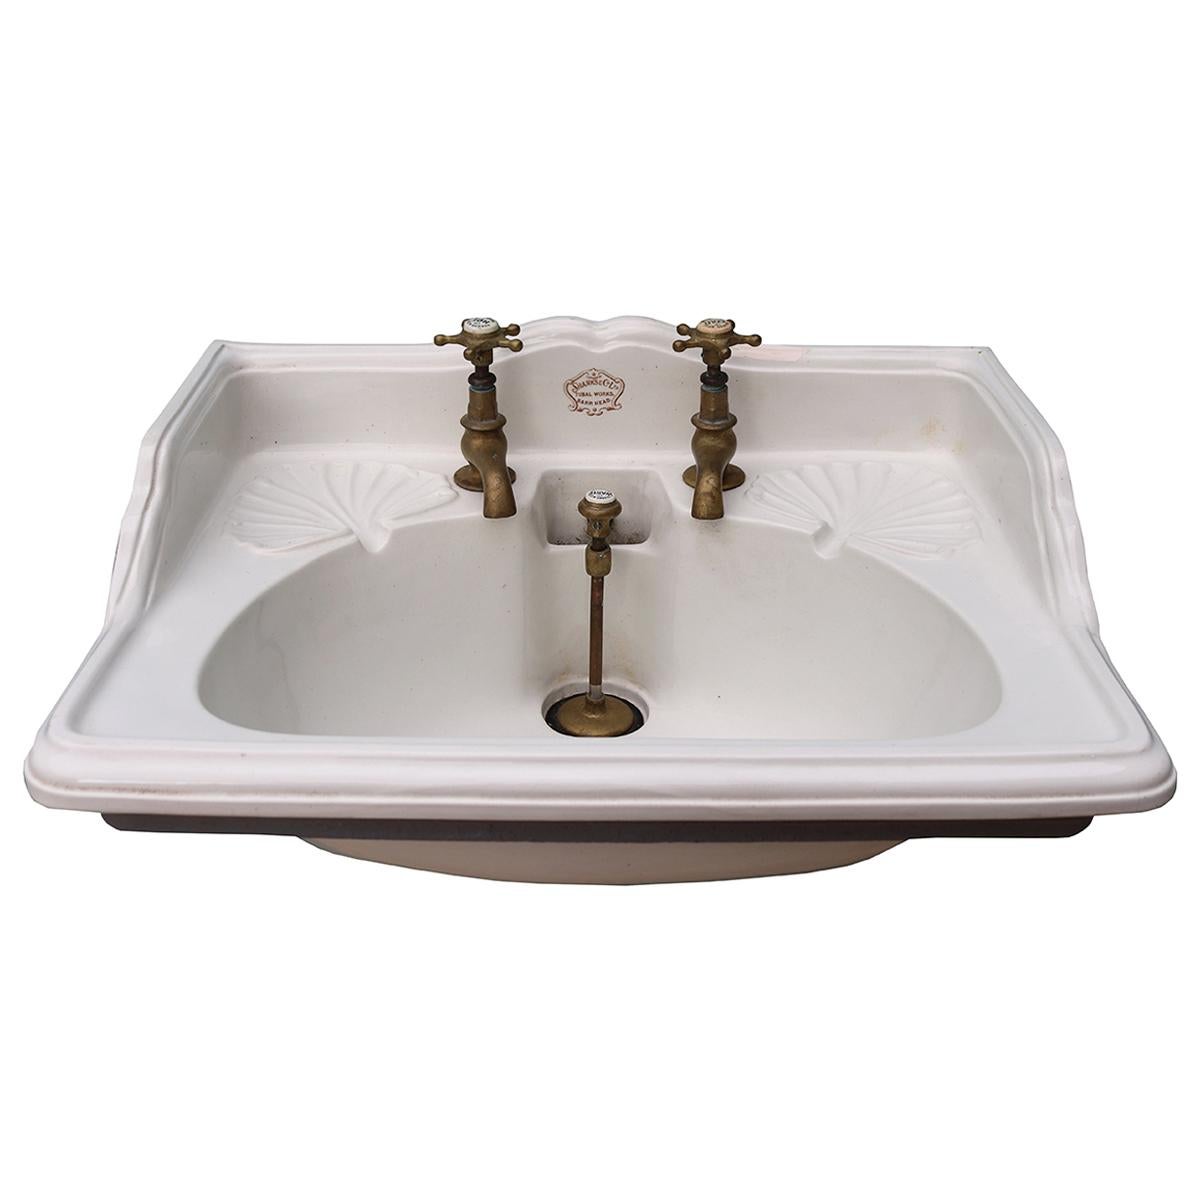 Antique ‘Shanks & Co.’ Wash Basin or Sink